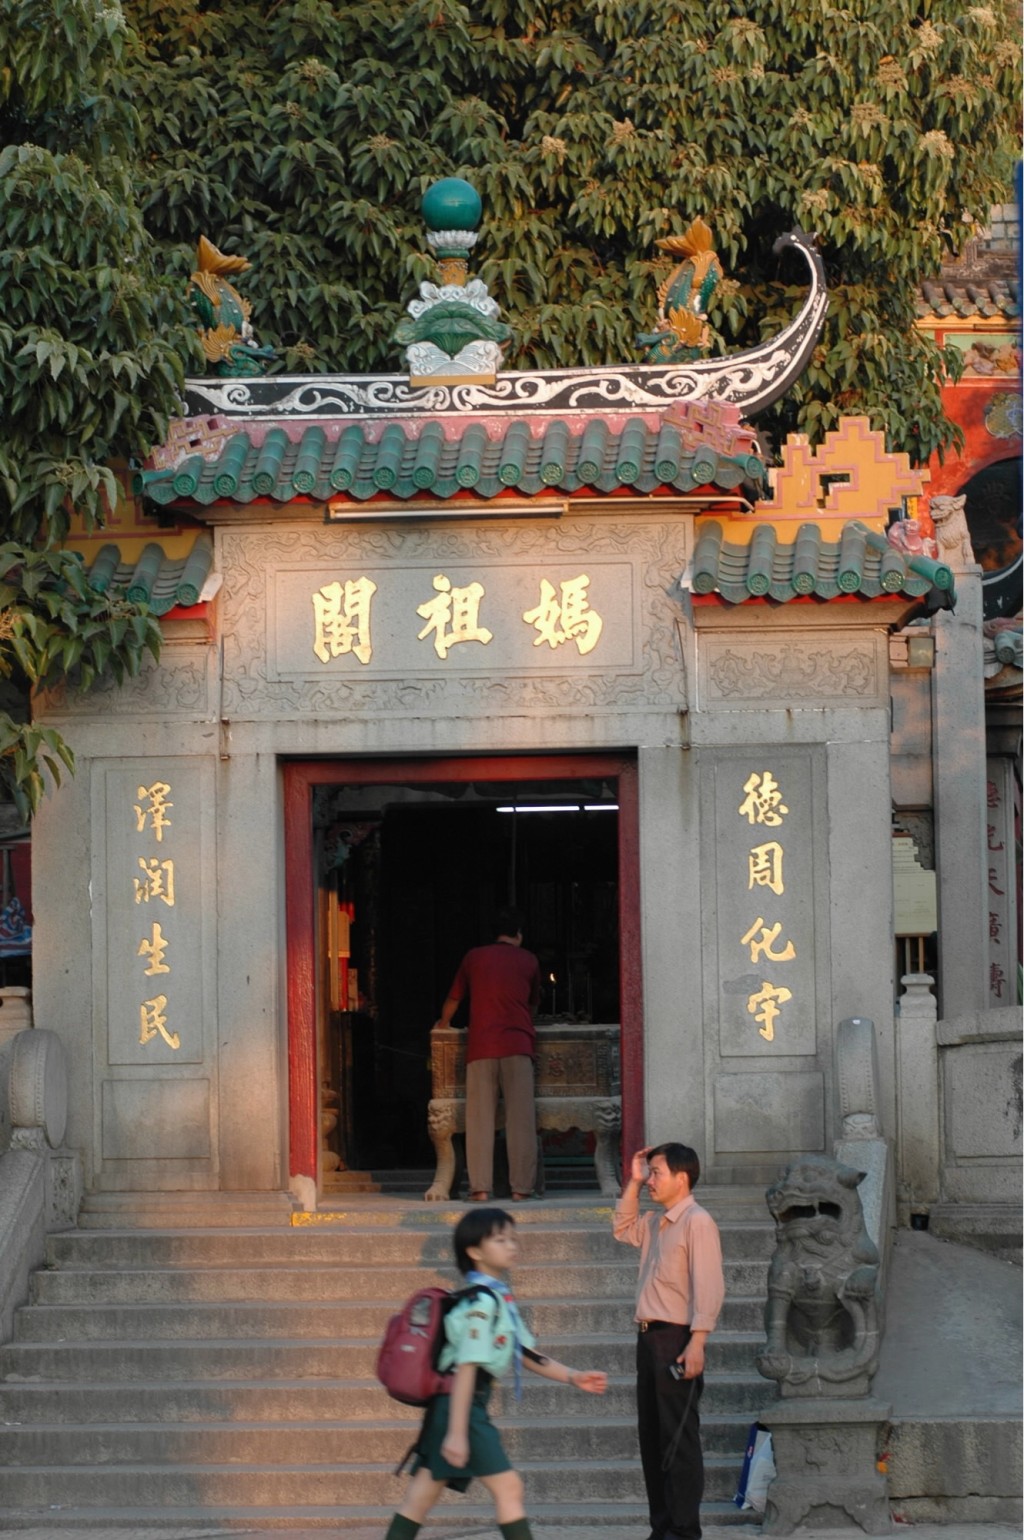 媽祖閣在建築上具閩南特色，是澳門現存最古老的廟宇。